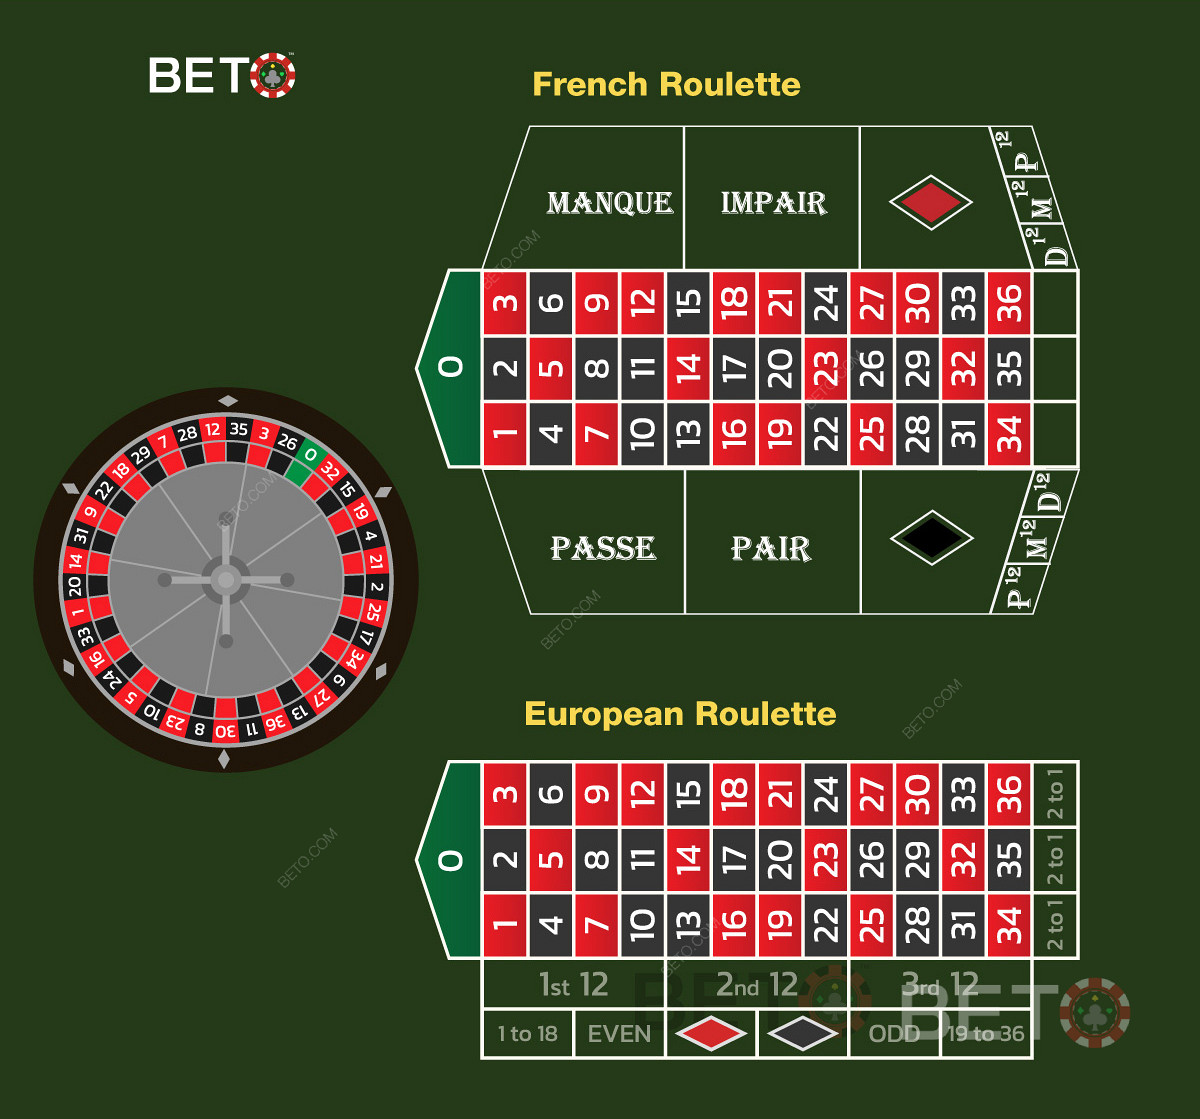 Fransk roulette jämfört med europeisk roulette